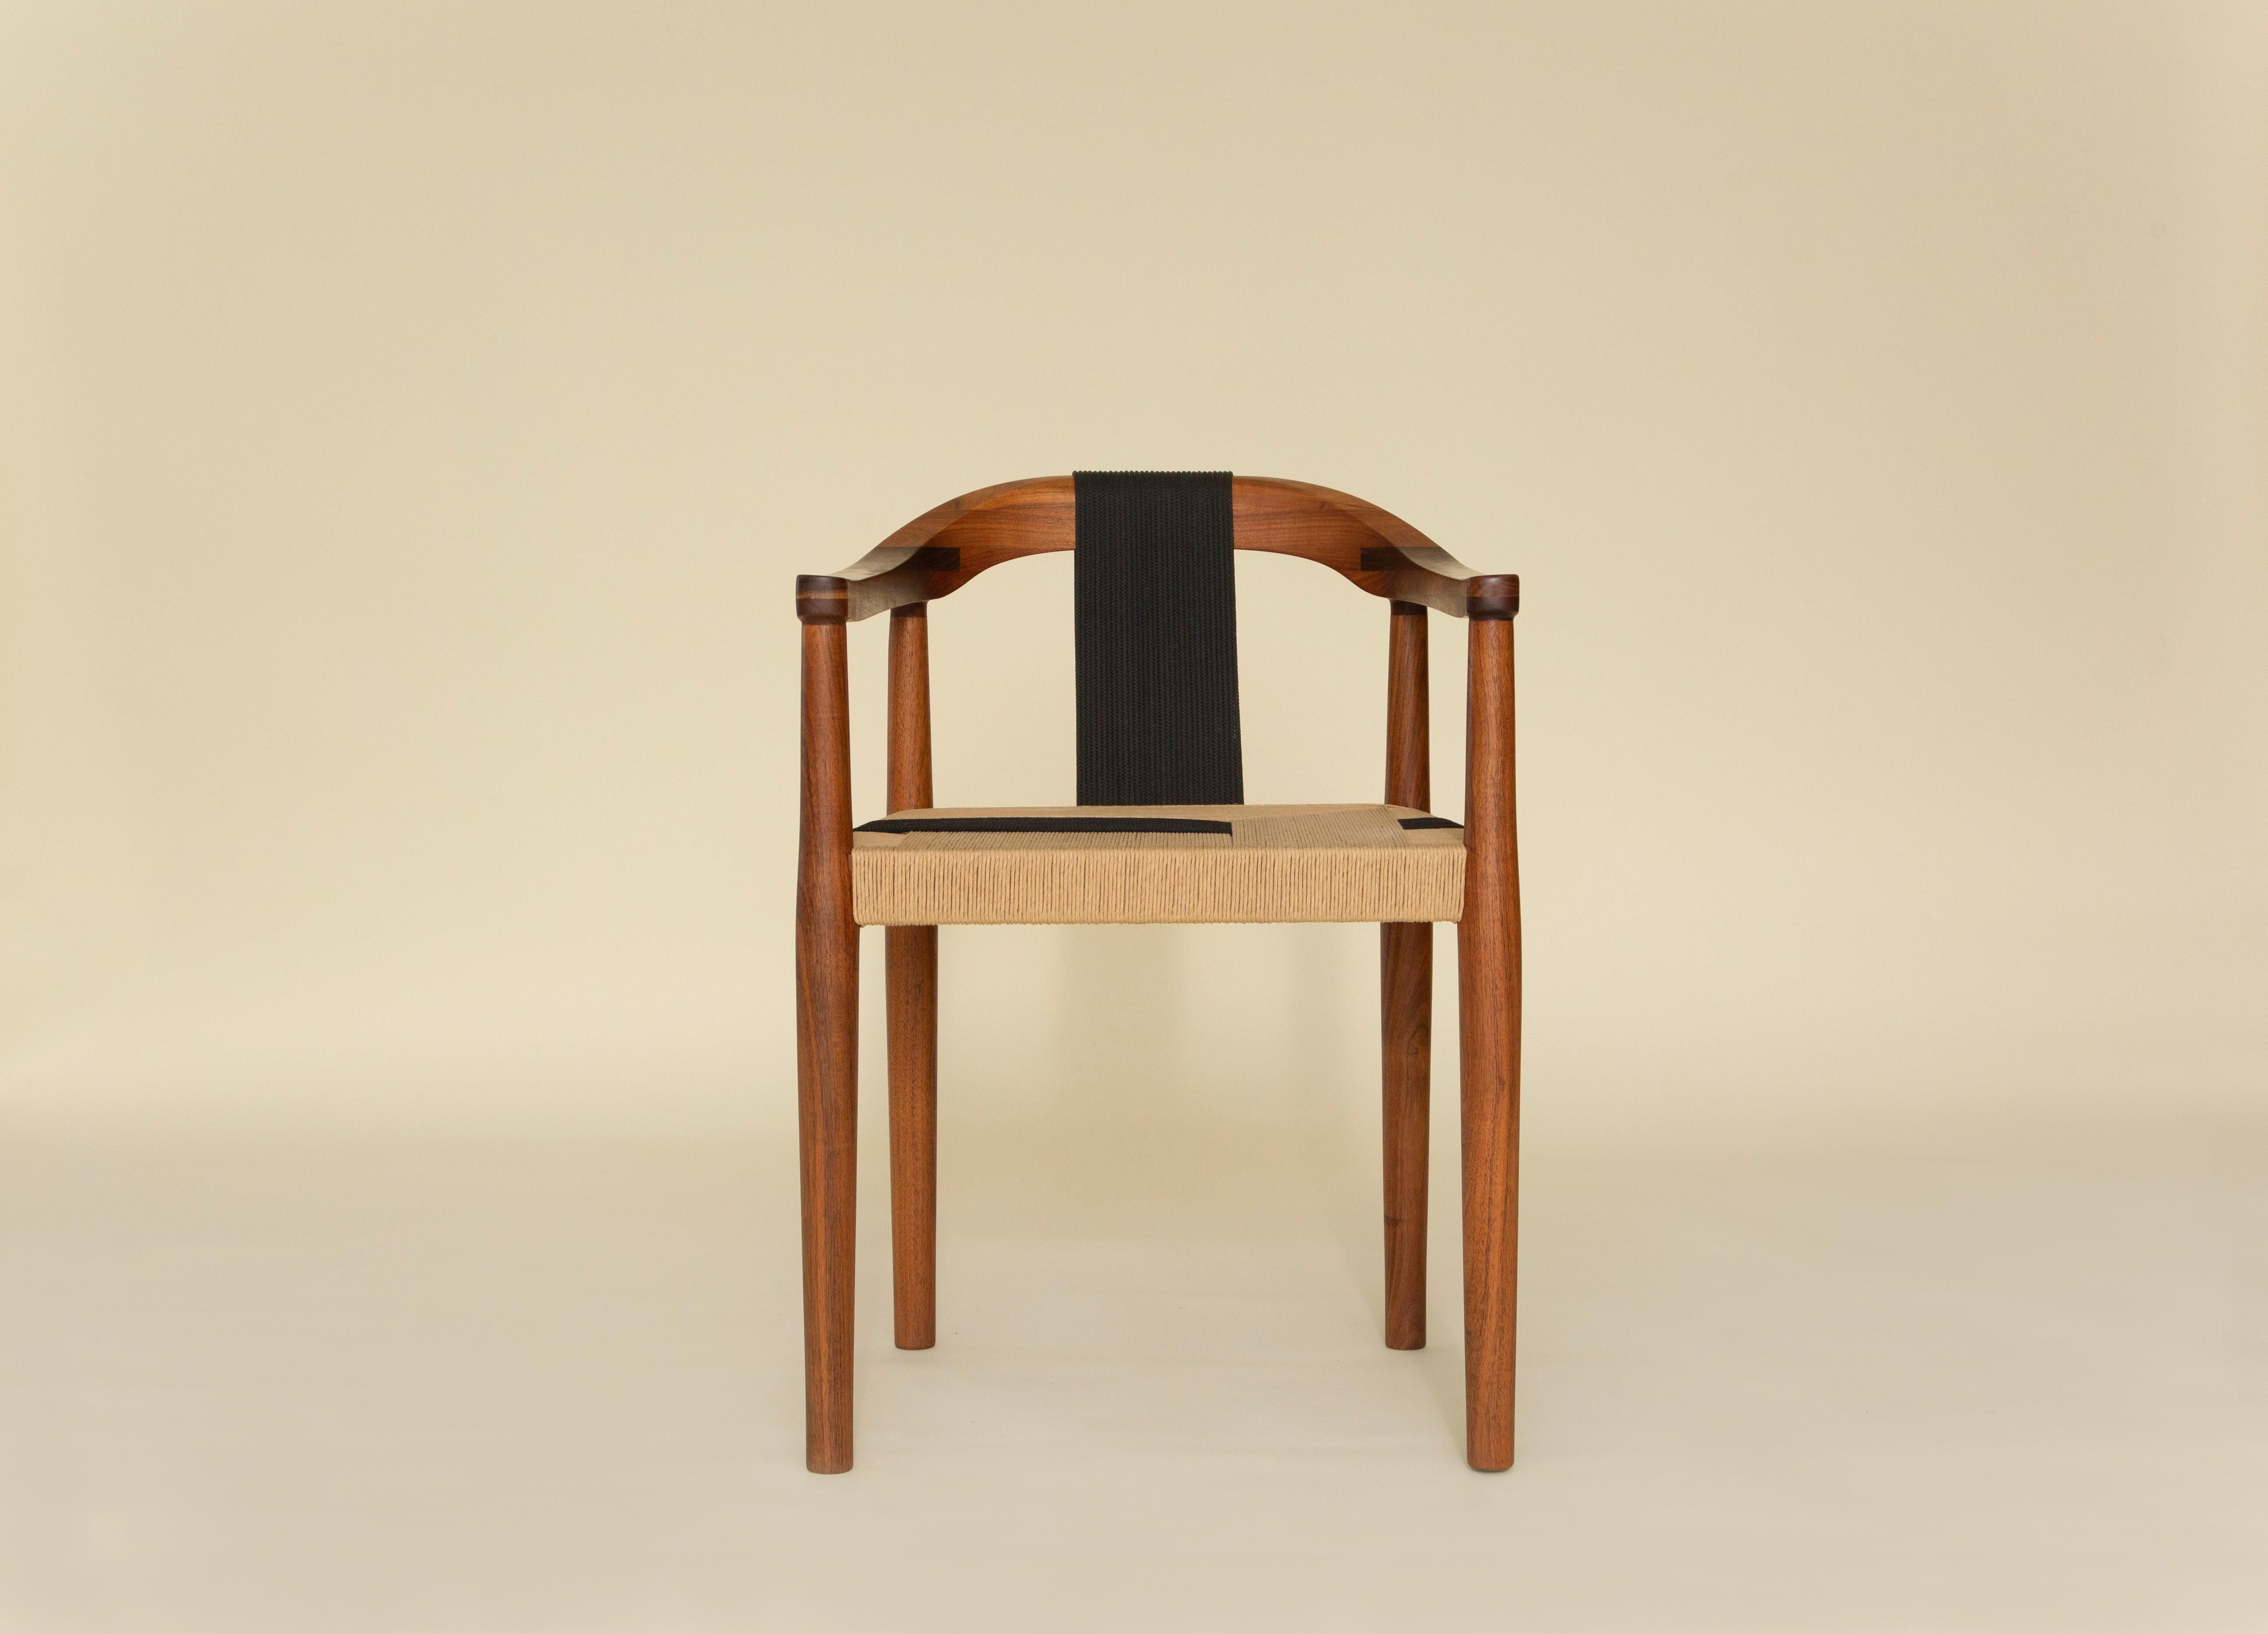 Fabriquée avec précision et soin, la chaise Emma témoigne du riche héritage de l'artisanat mexicain. Chaque chaise est une œuvre d'art unique, mettant en valeur les mains habiles qui donnent vie à des techniques ancestrales. 

Découvrez un nouveau